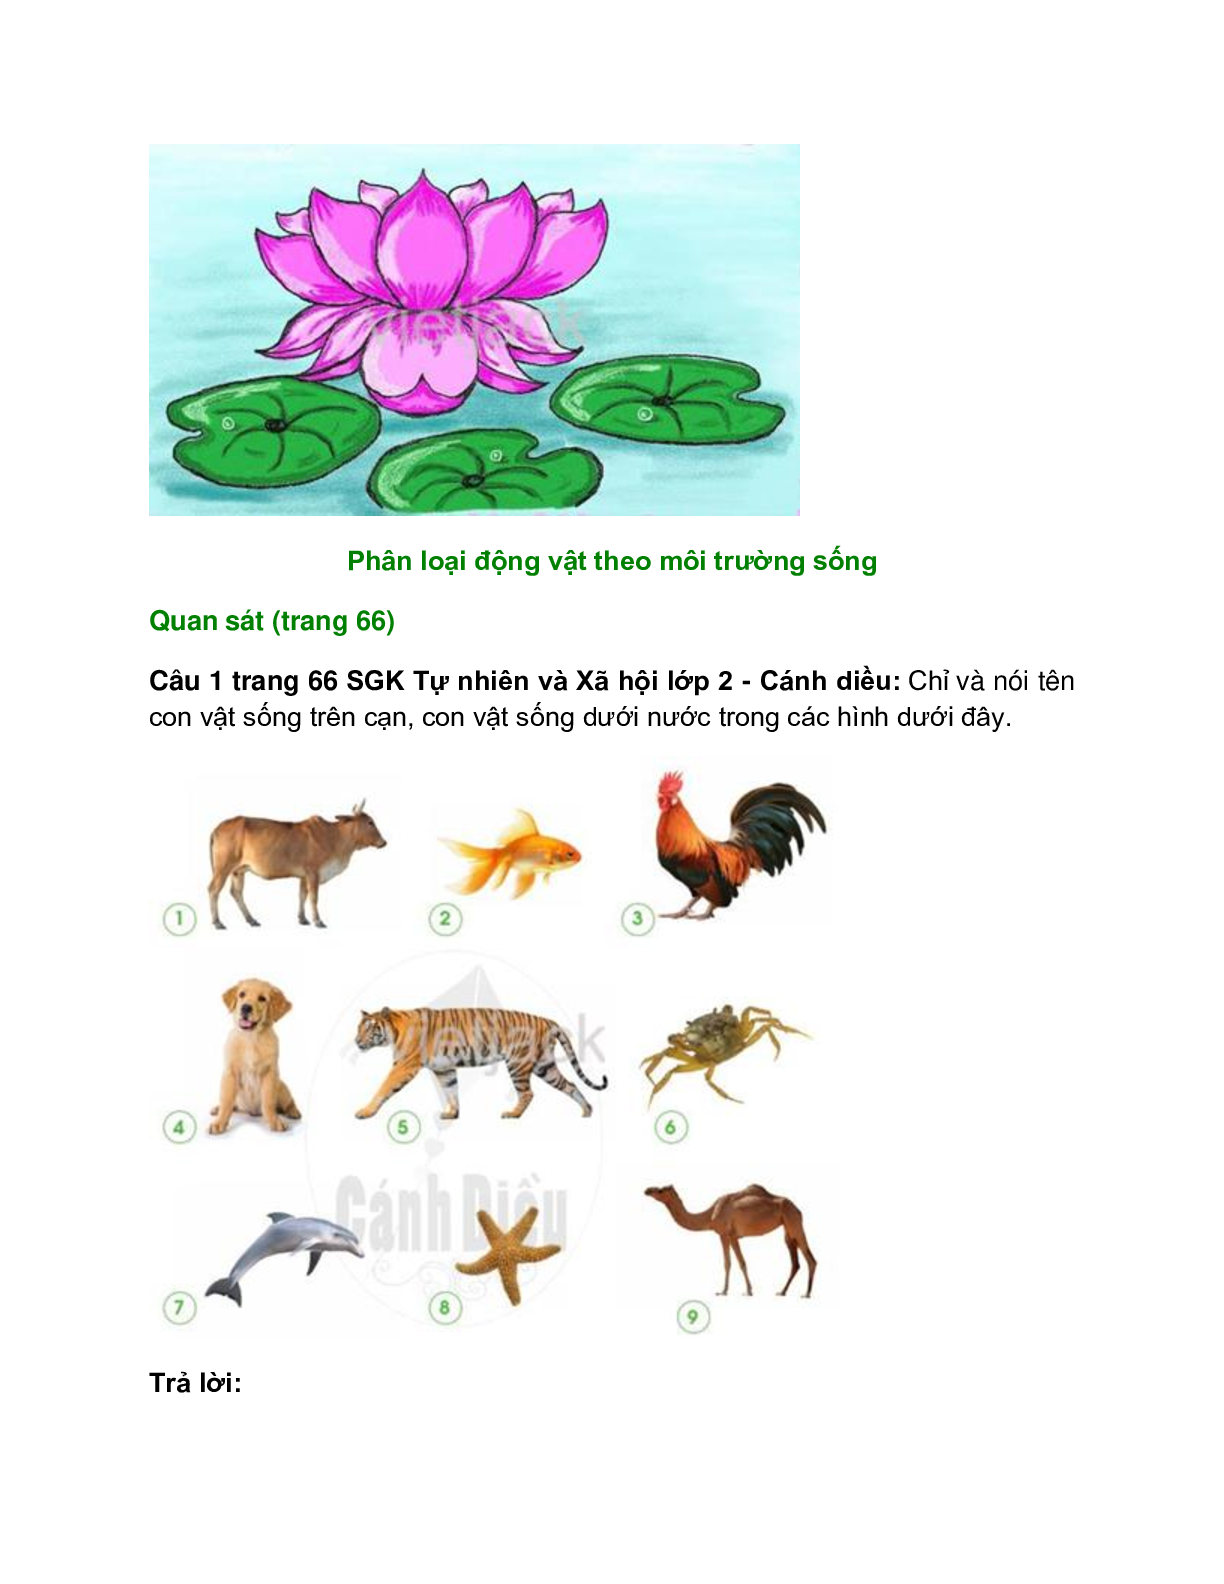 Giải SGK Tự nhiên và Xã hội lớp 2 trang 62, 63, 64, 65, 66, 67 Bài 11: Môi trường sống của thực vật và động vật – Cánh diều (trang 8)